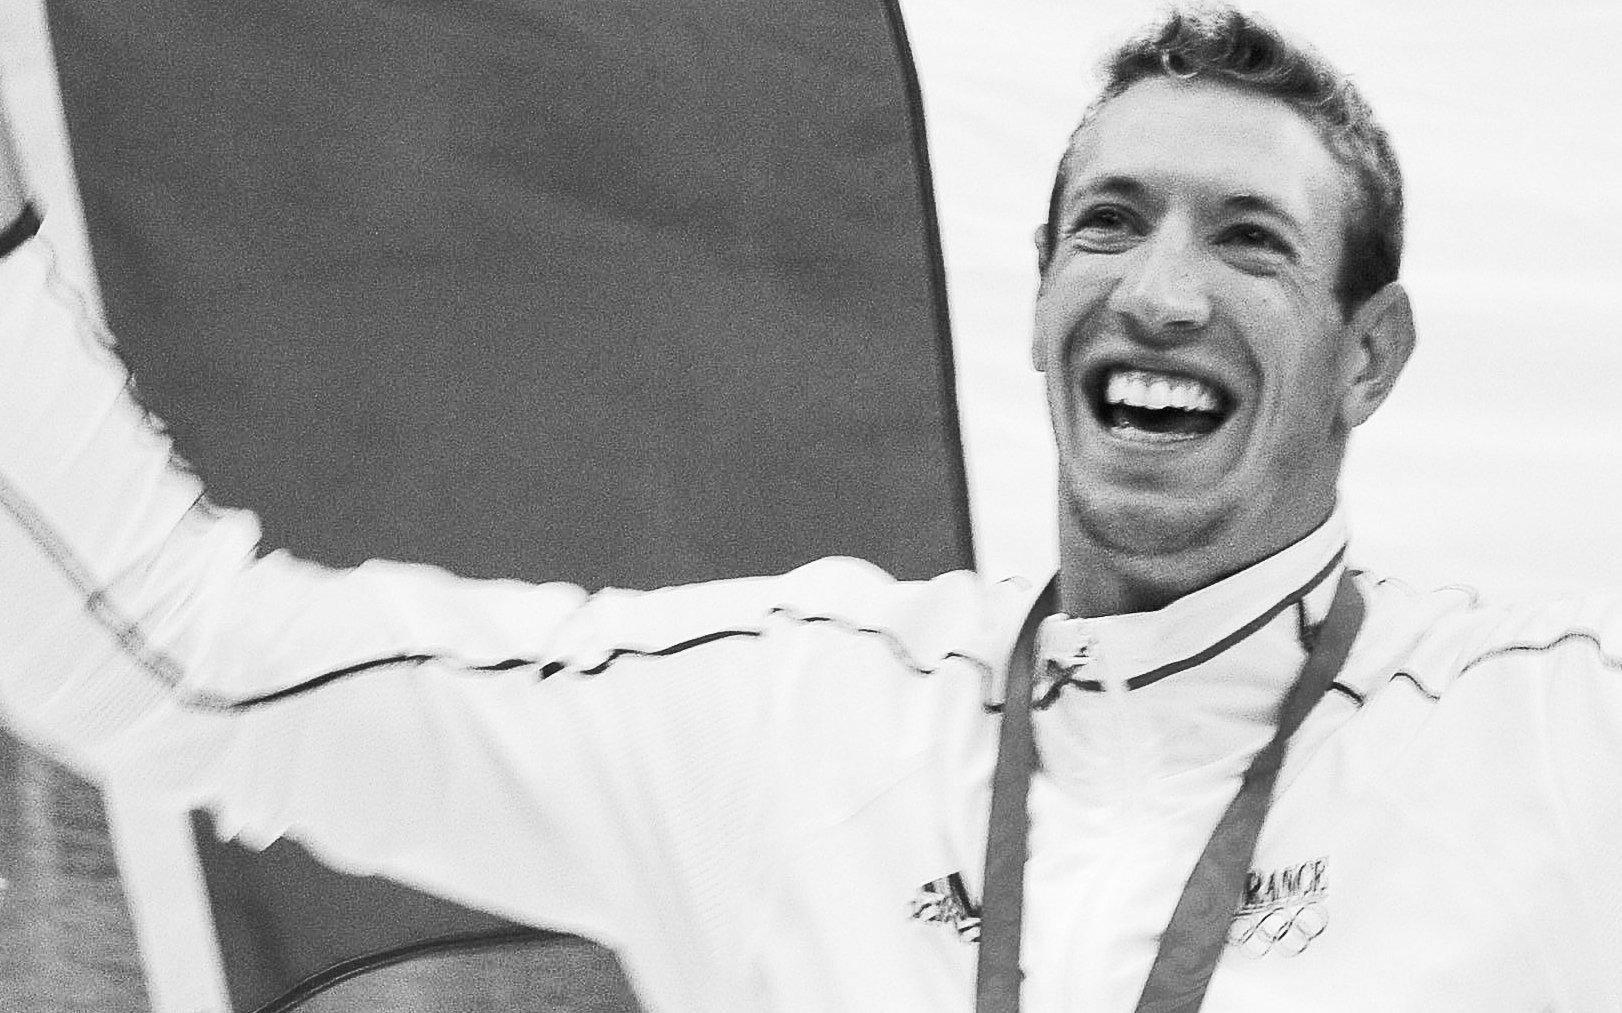 Le 14 août 2008 à Pékin, Alain Bernard remporte la médaille d’or olympique sur 100 m nage libre. Icon Sport/Henri Szwarc